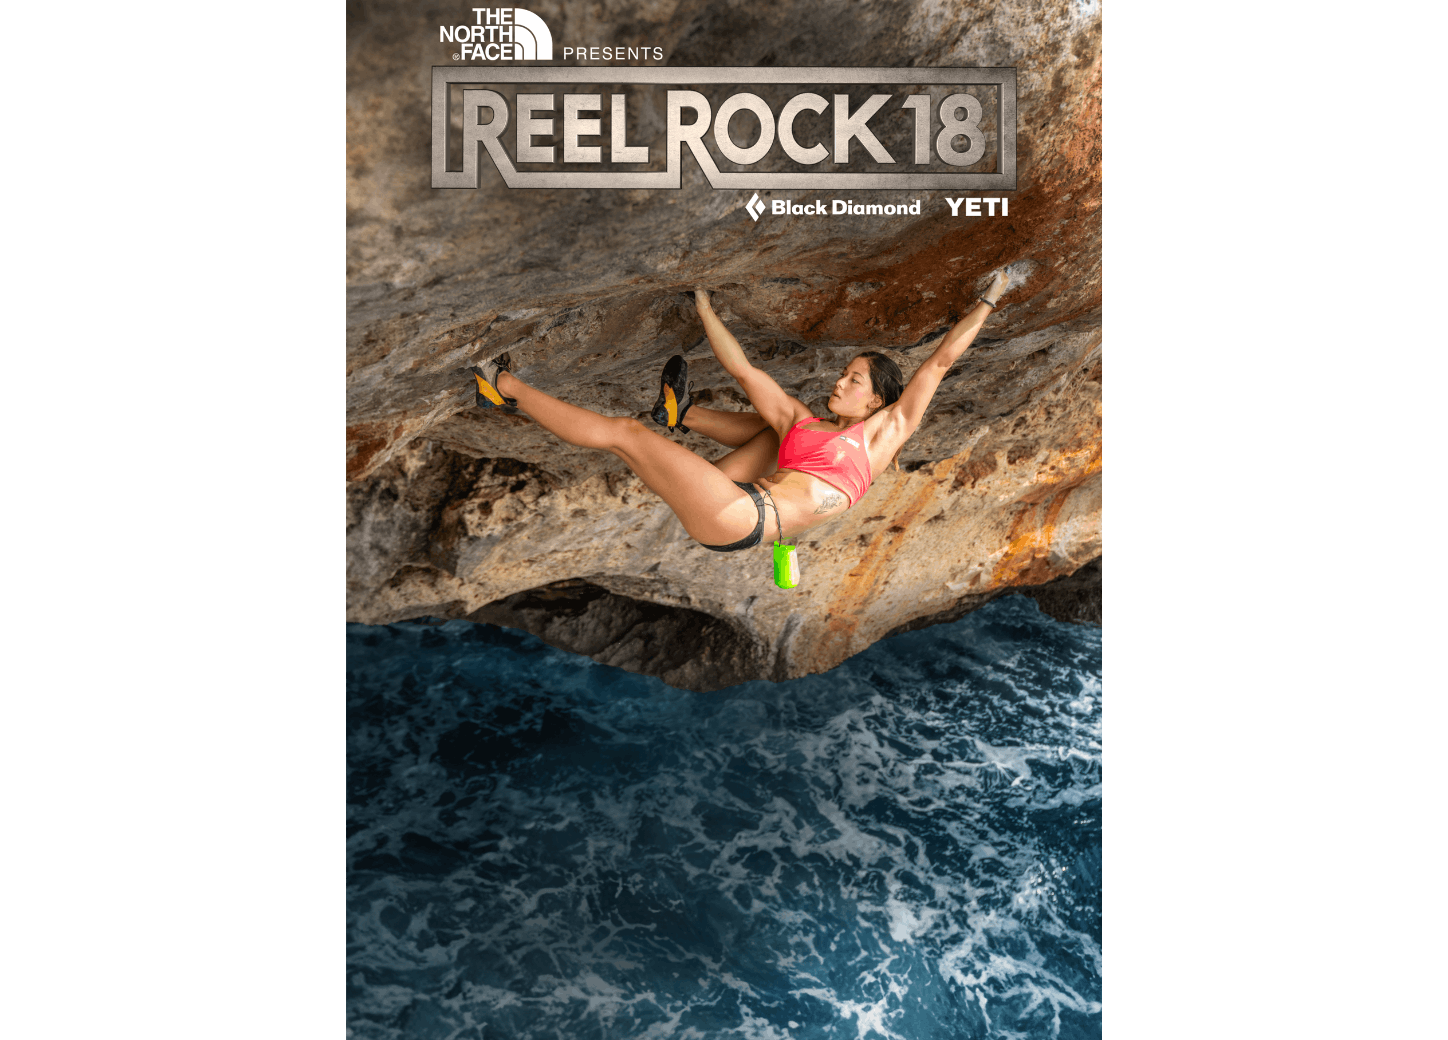 REEL ROCK 15: Action Directe, 2021-22 World Tour - Maple Program